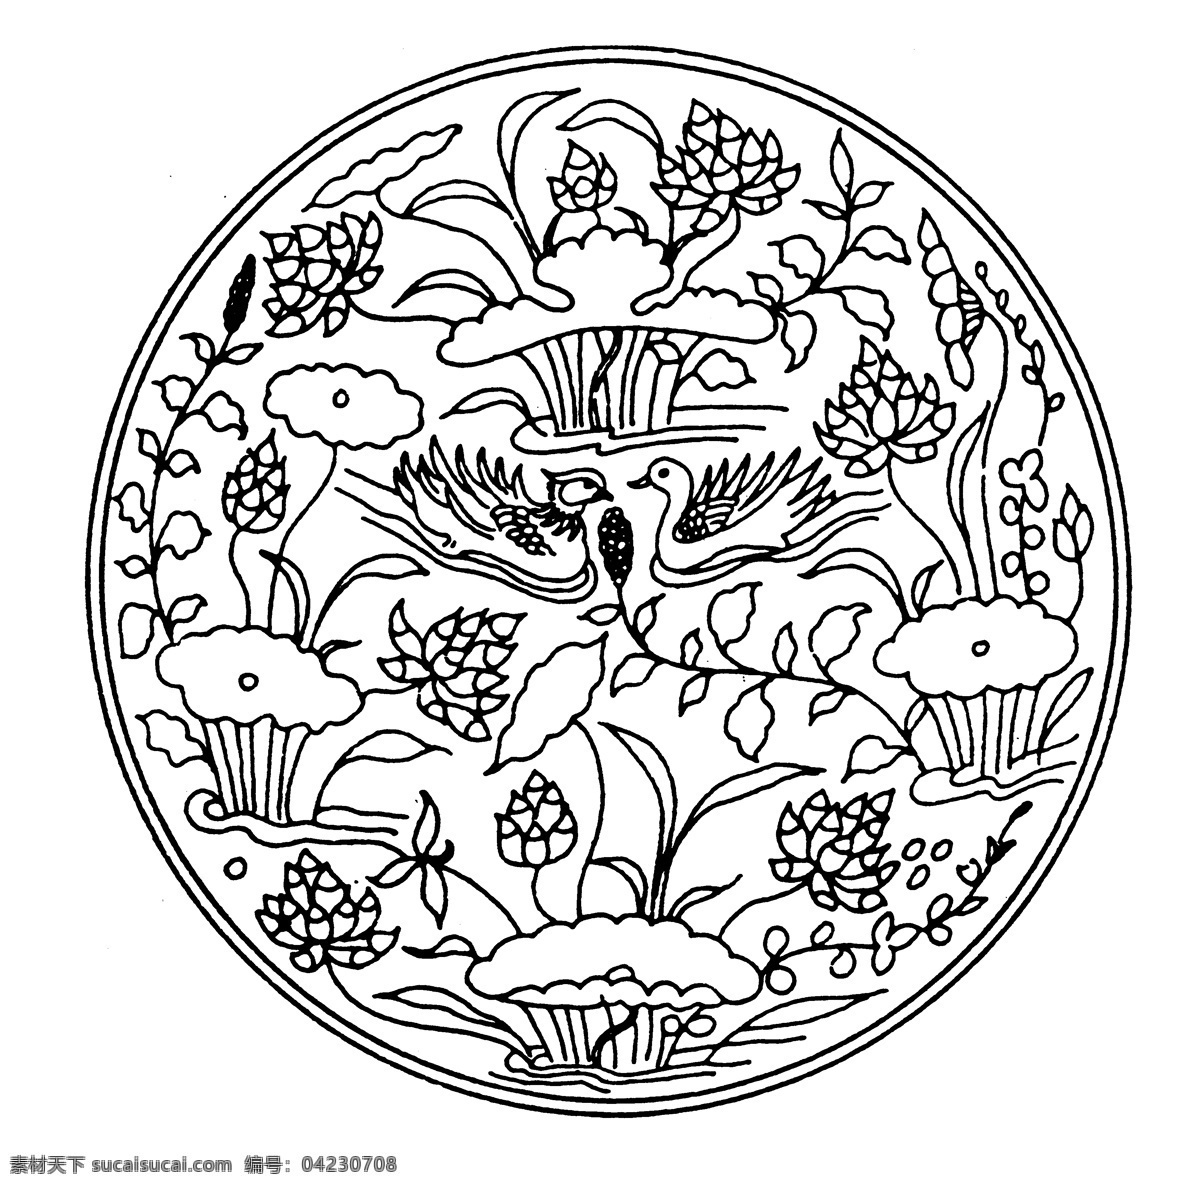 花鸟图案 元明时代图案 中国 传统 图案 设计素材 装饰图案 书画美术 白色